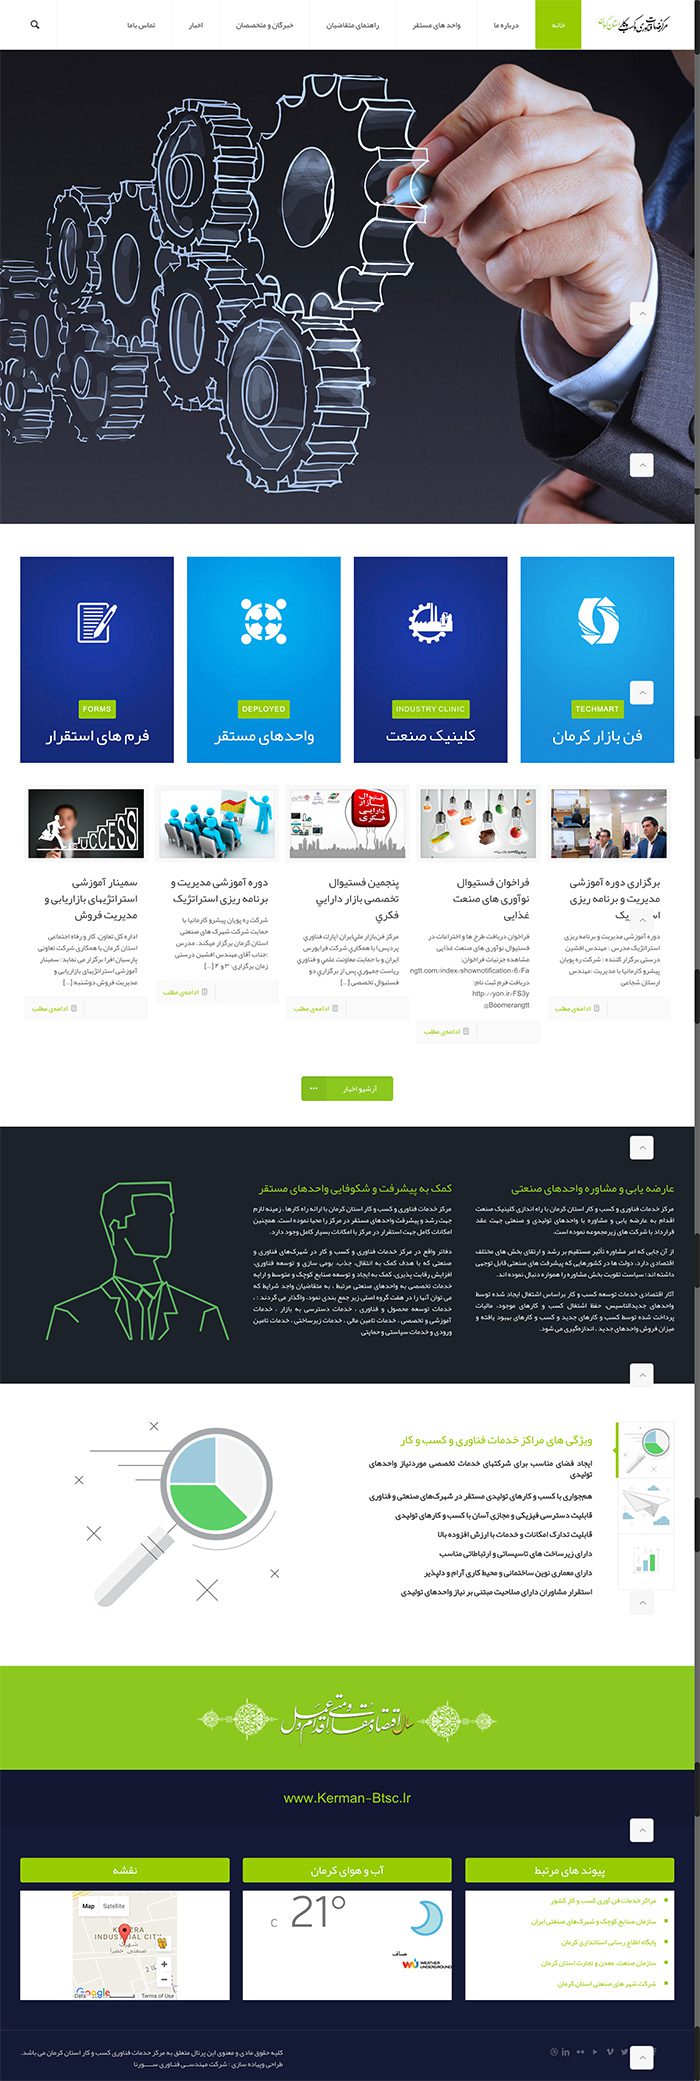 طراحی سایت مرکز خدمات فناوری و کسب کار استان کرمان توسط شرکت طراحی سایت سورنا در کرمان